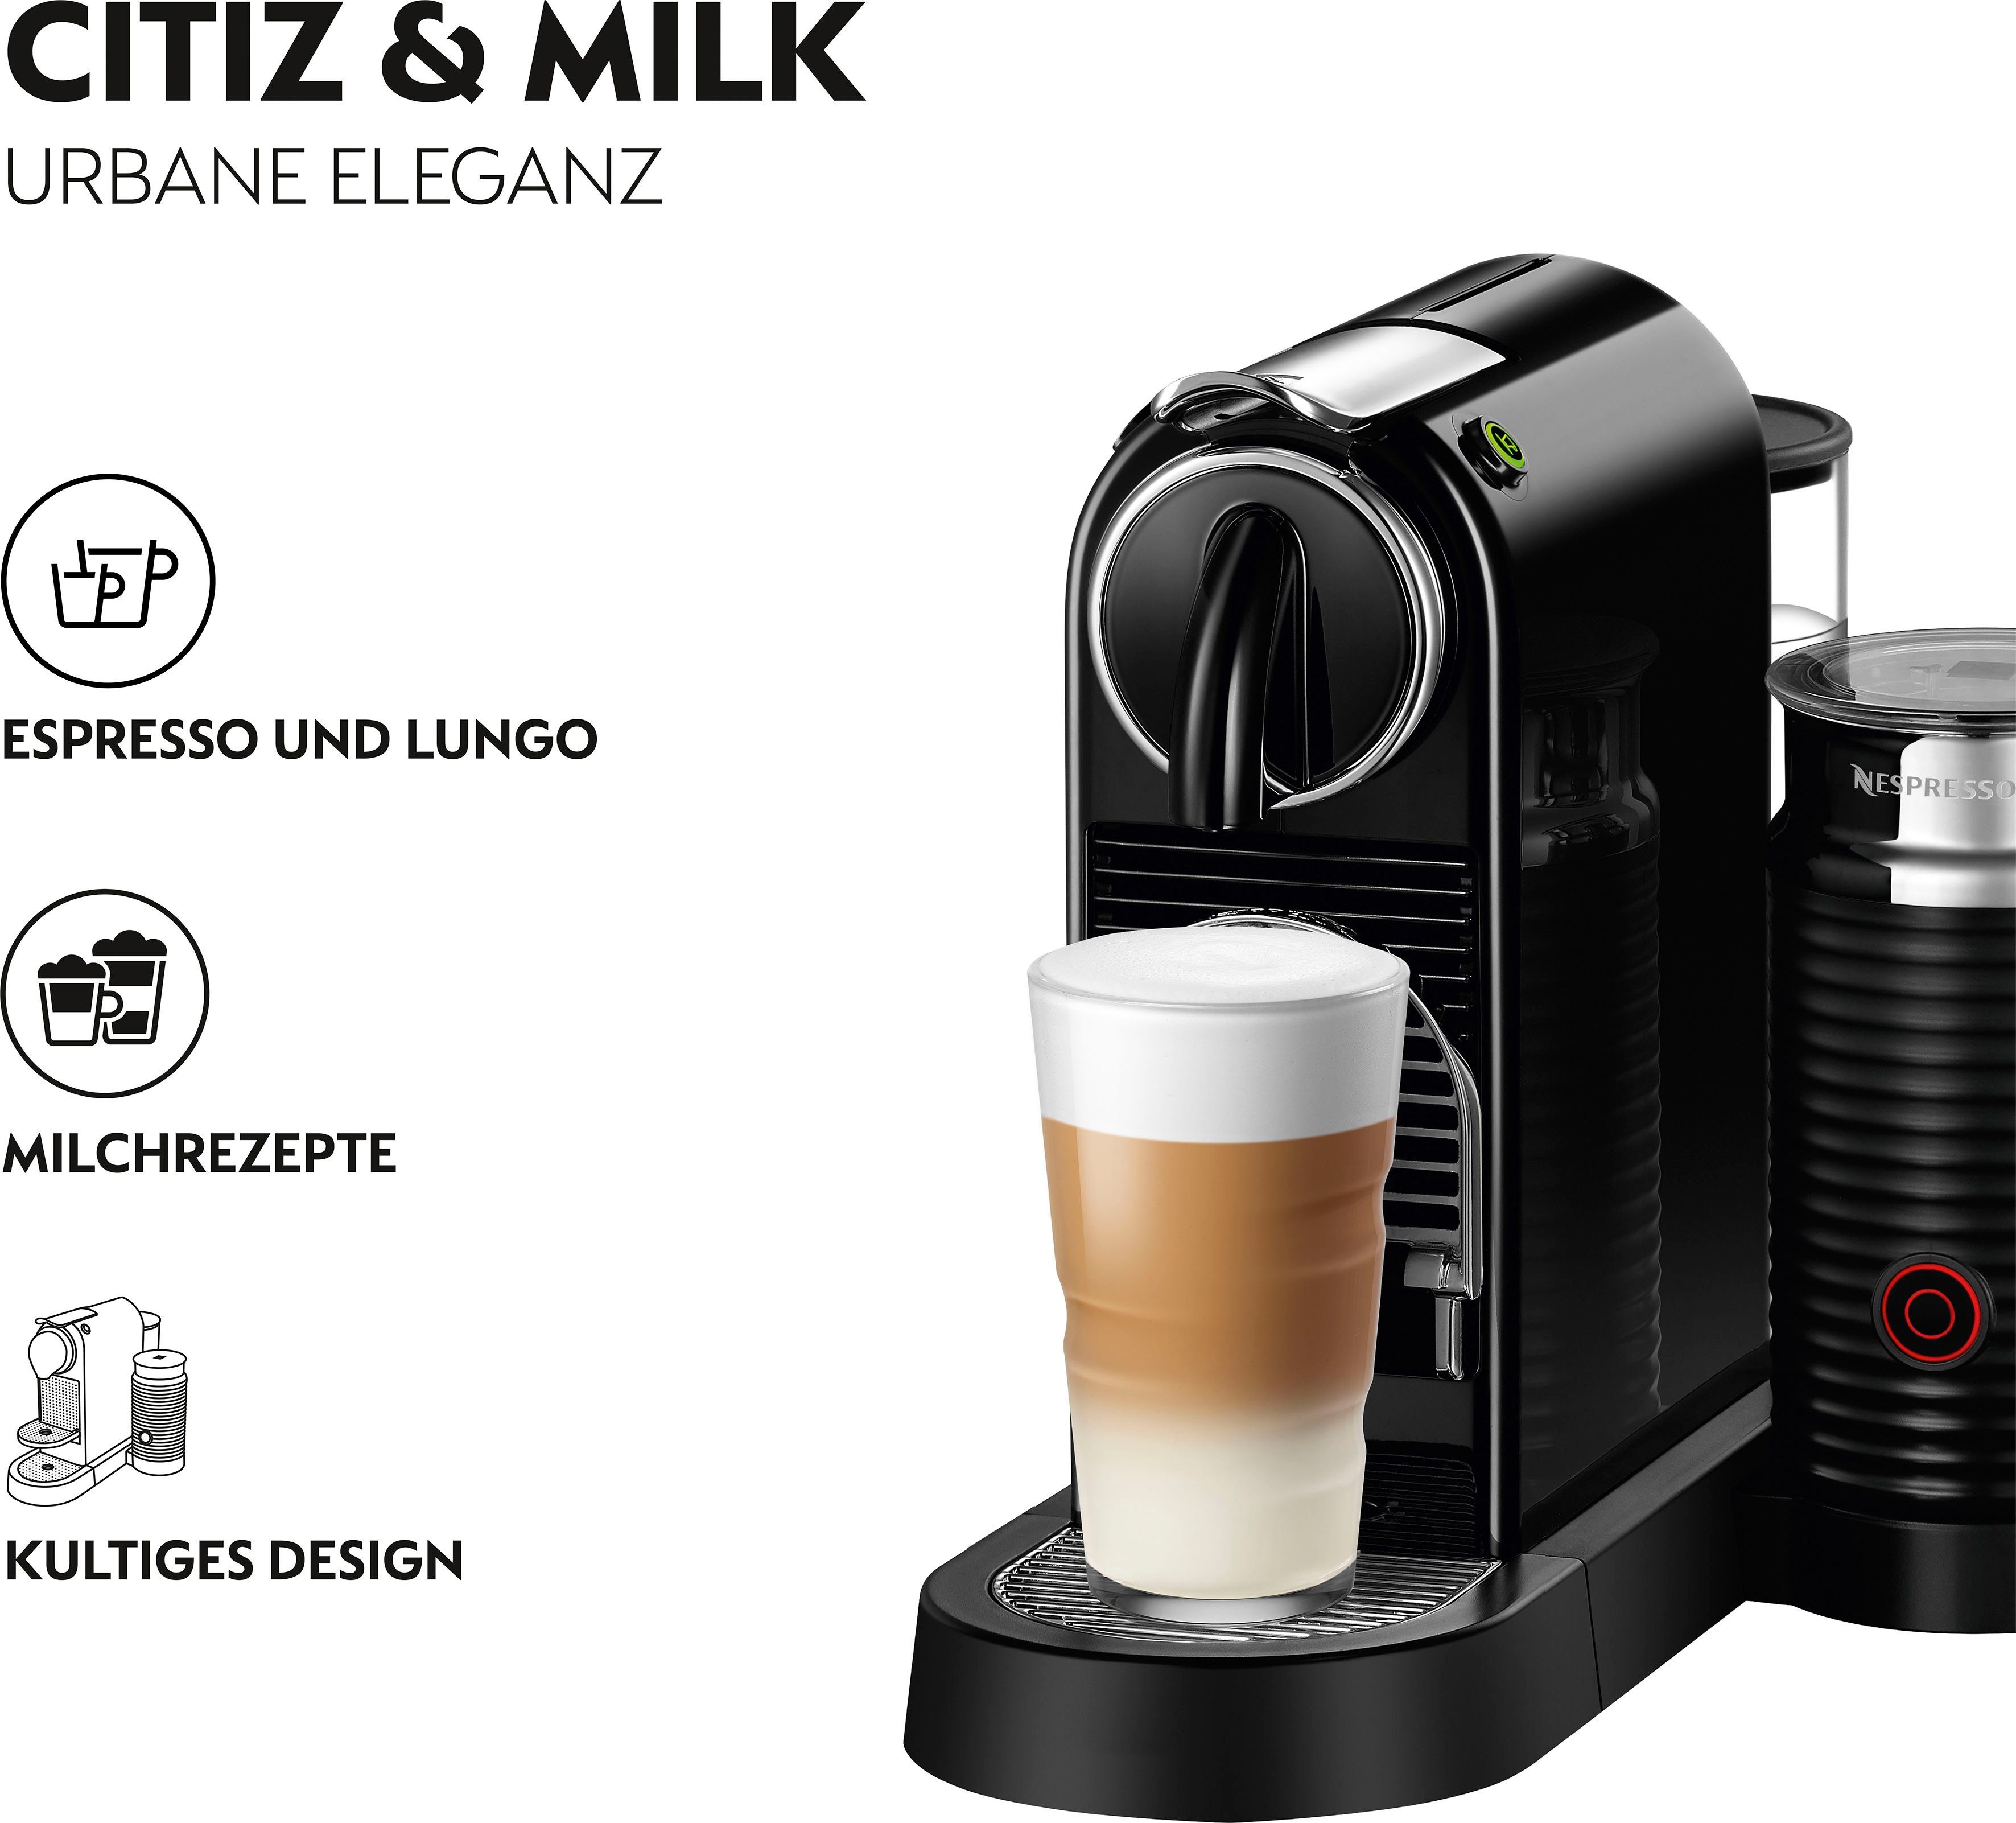 Nespresso Kapselmaschine CITIZ EN 267.BAE von DeLonghi, Schwarz, inkl. Aeroccino  Milchaufschäumer, Willkommenspaket mit 7 Kapseln